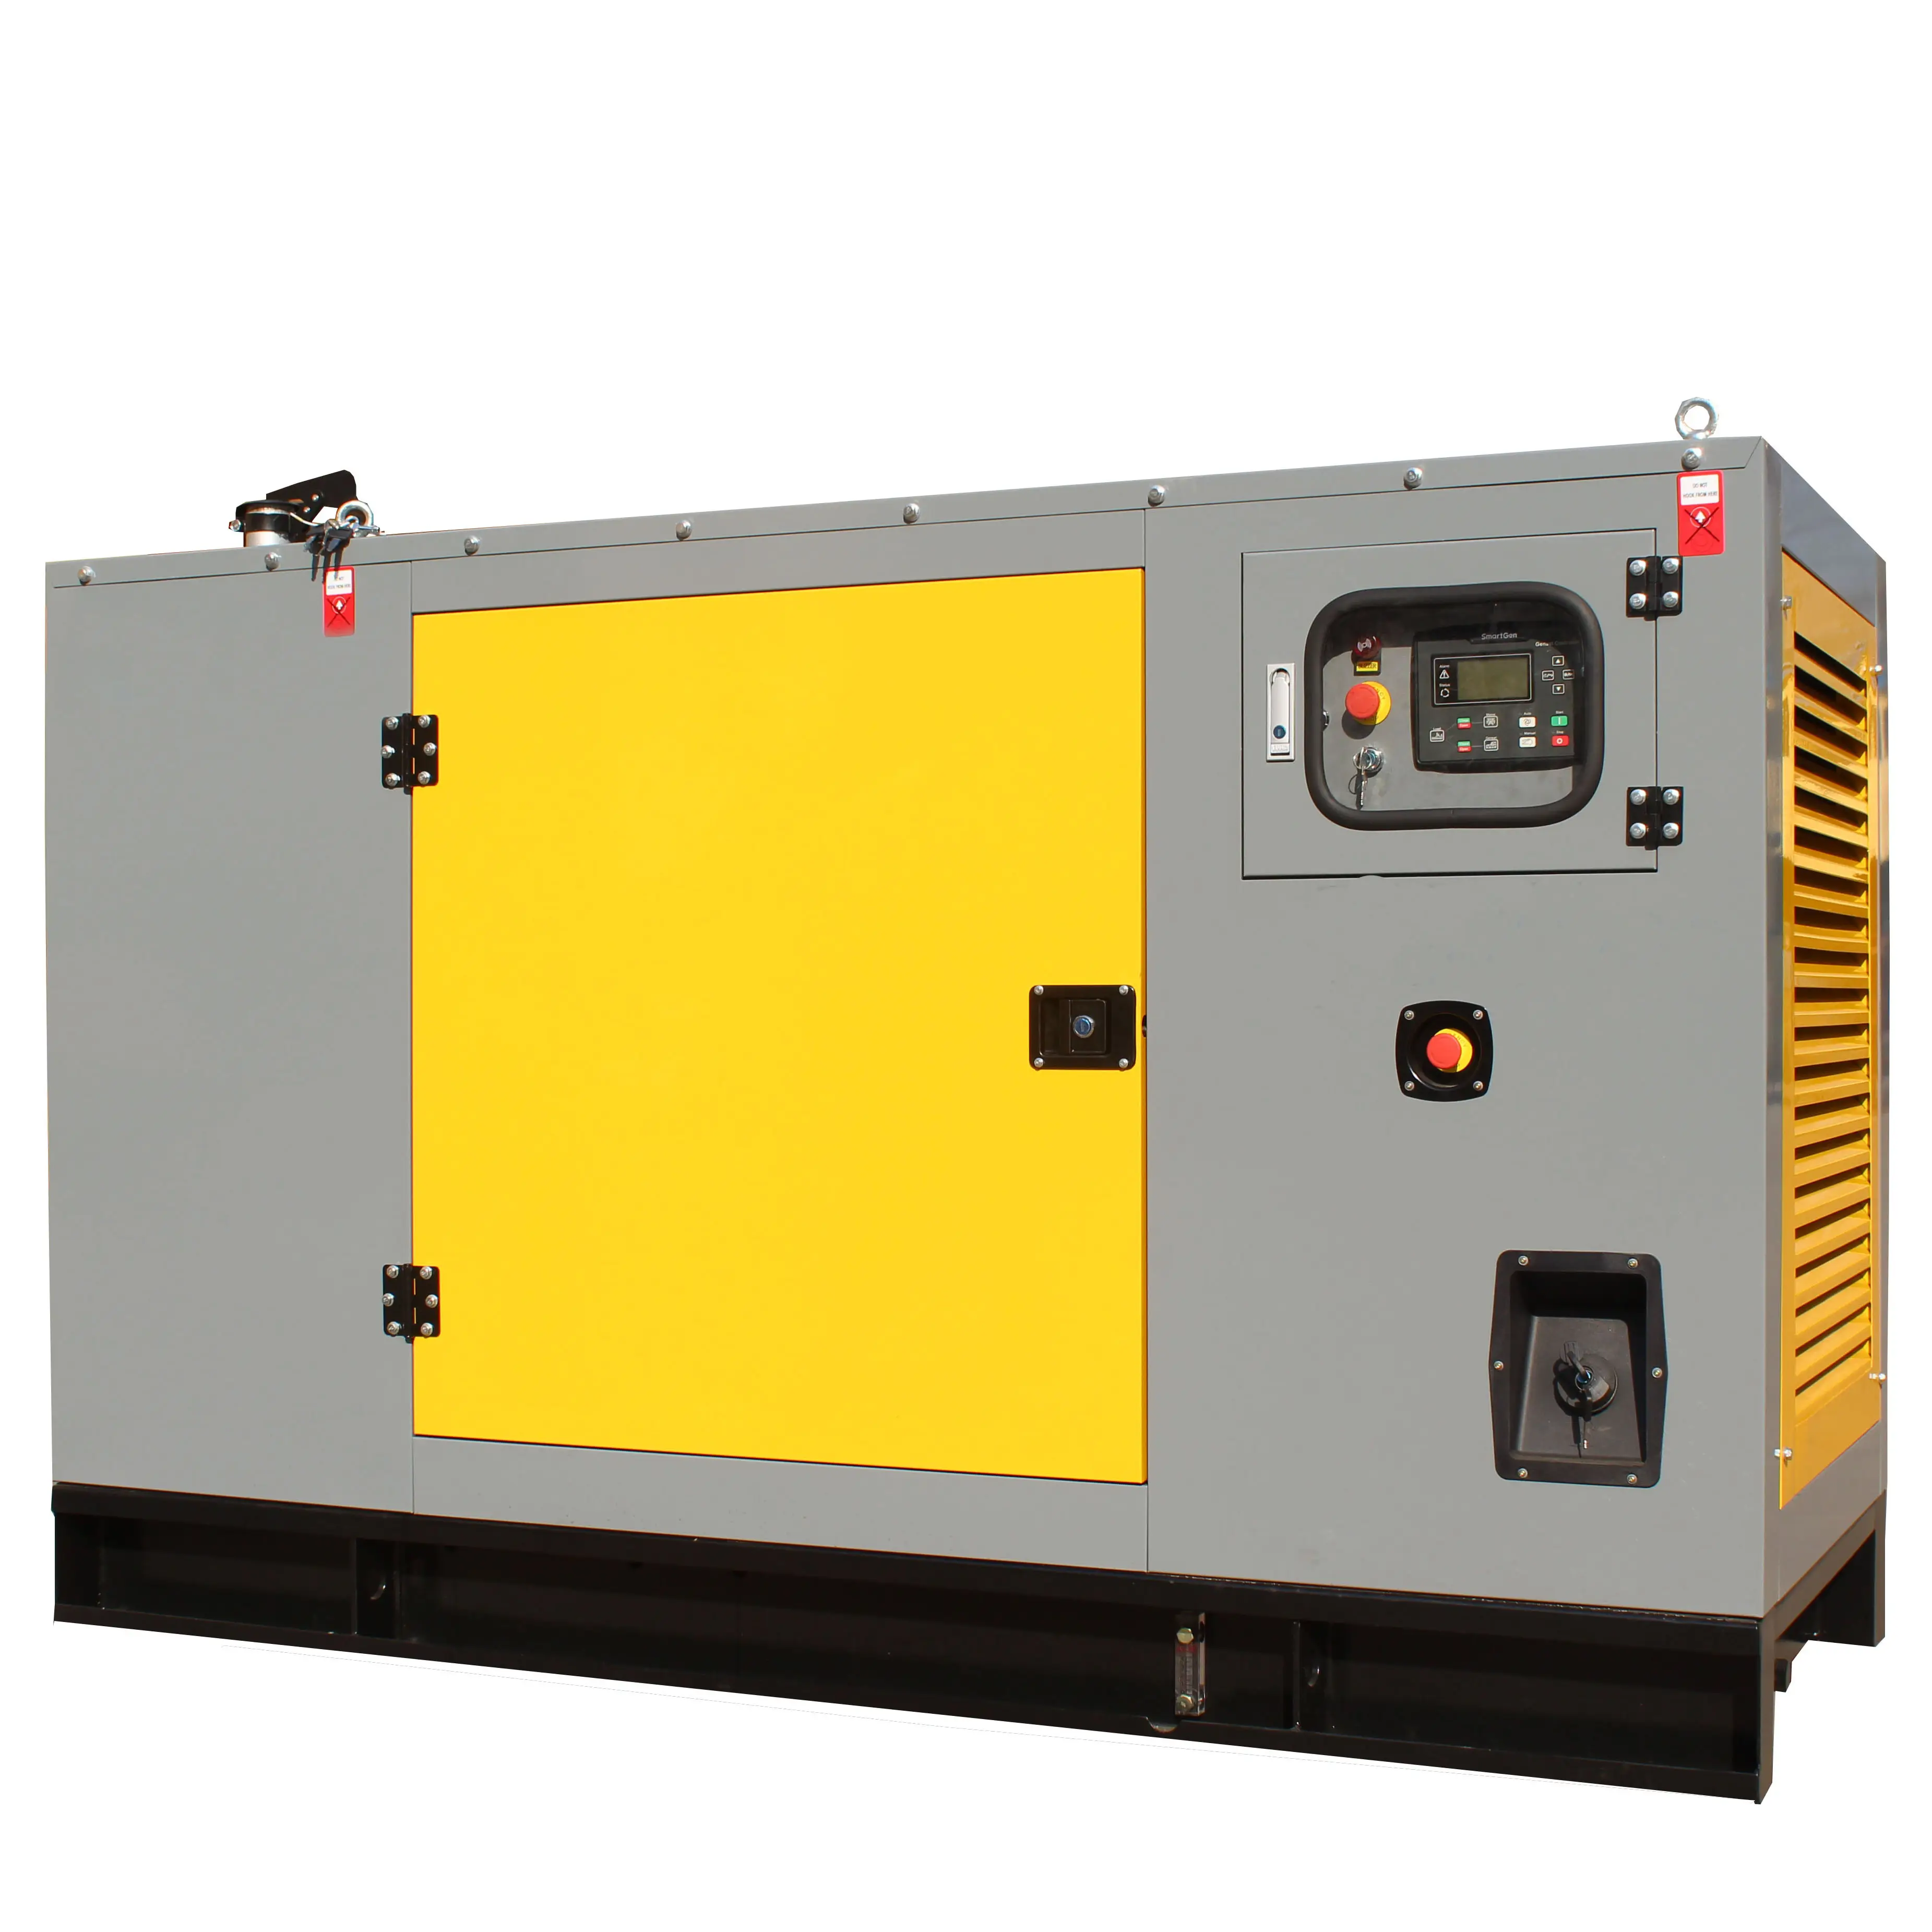 Bán hàng nóng cho máy phát điện kipor im lặng máy phát điện diesel 12Kva/10kw 3 giai đoạn 50 HZ/60 HZ